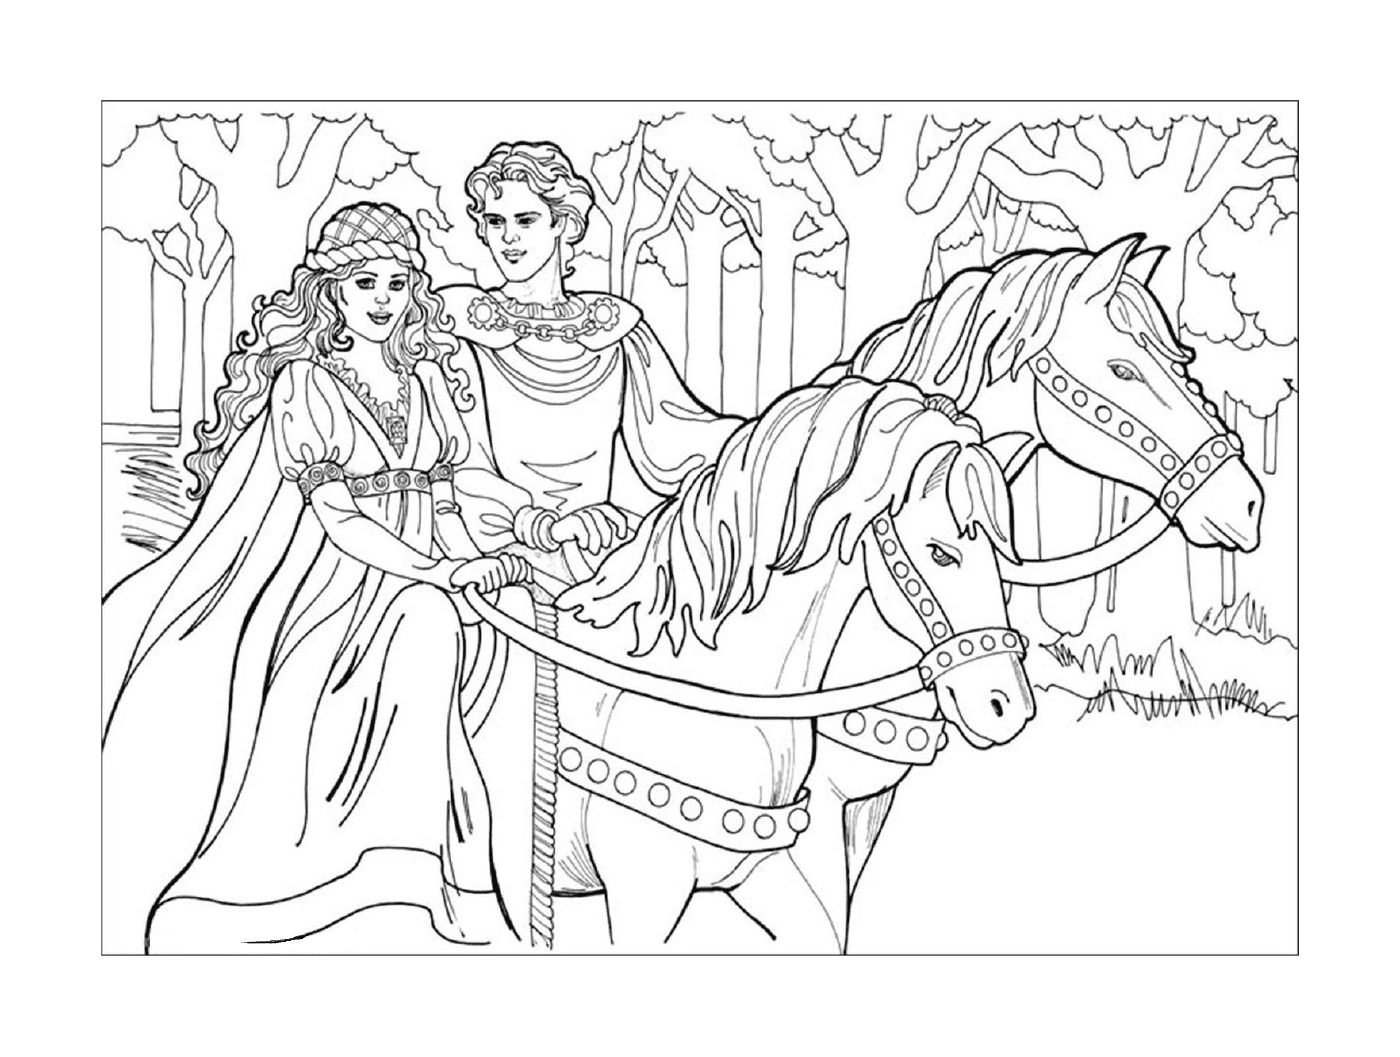  Disney Princess, una coppia su una carrozza trainata da cavalli 